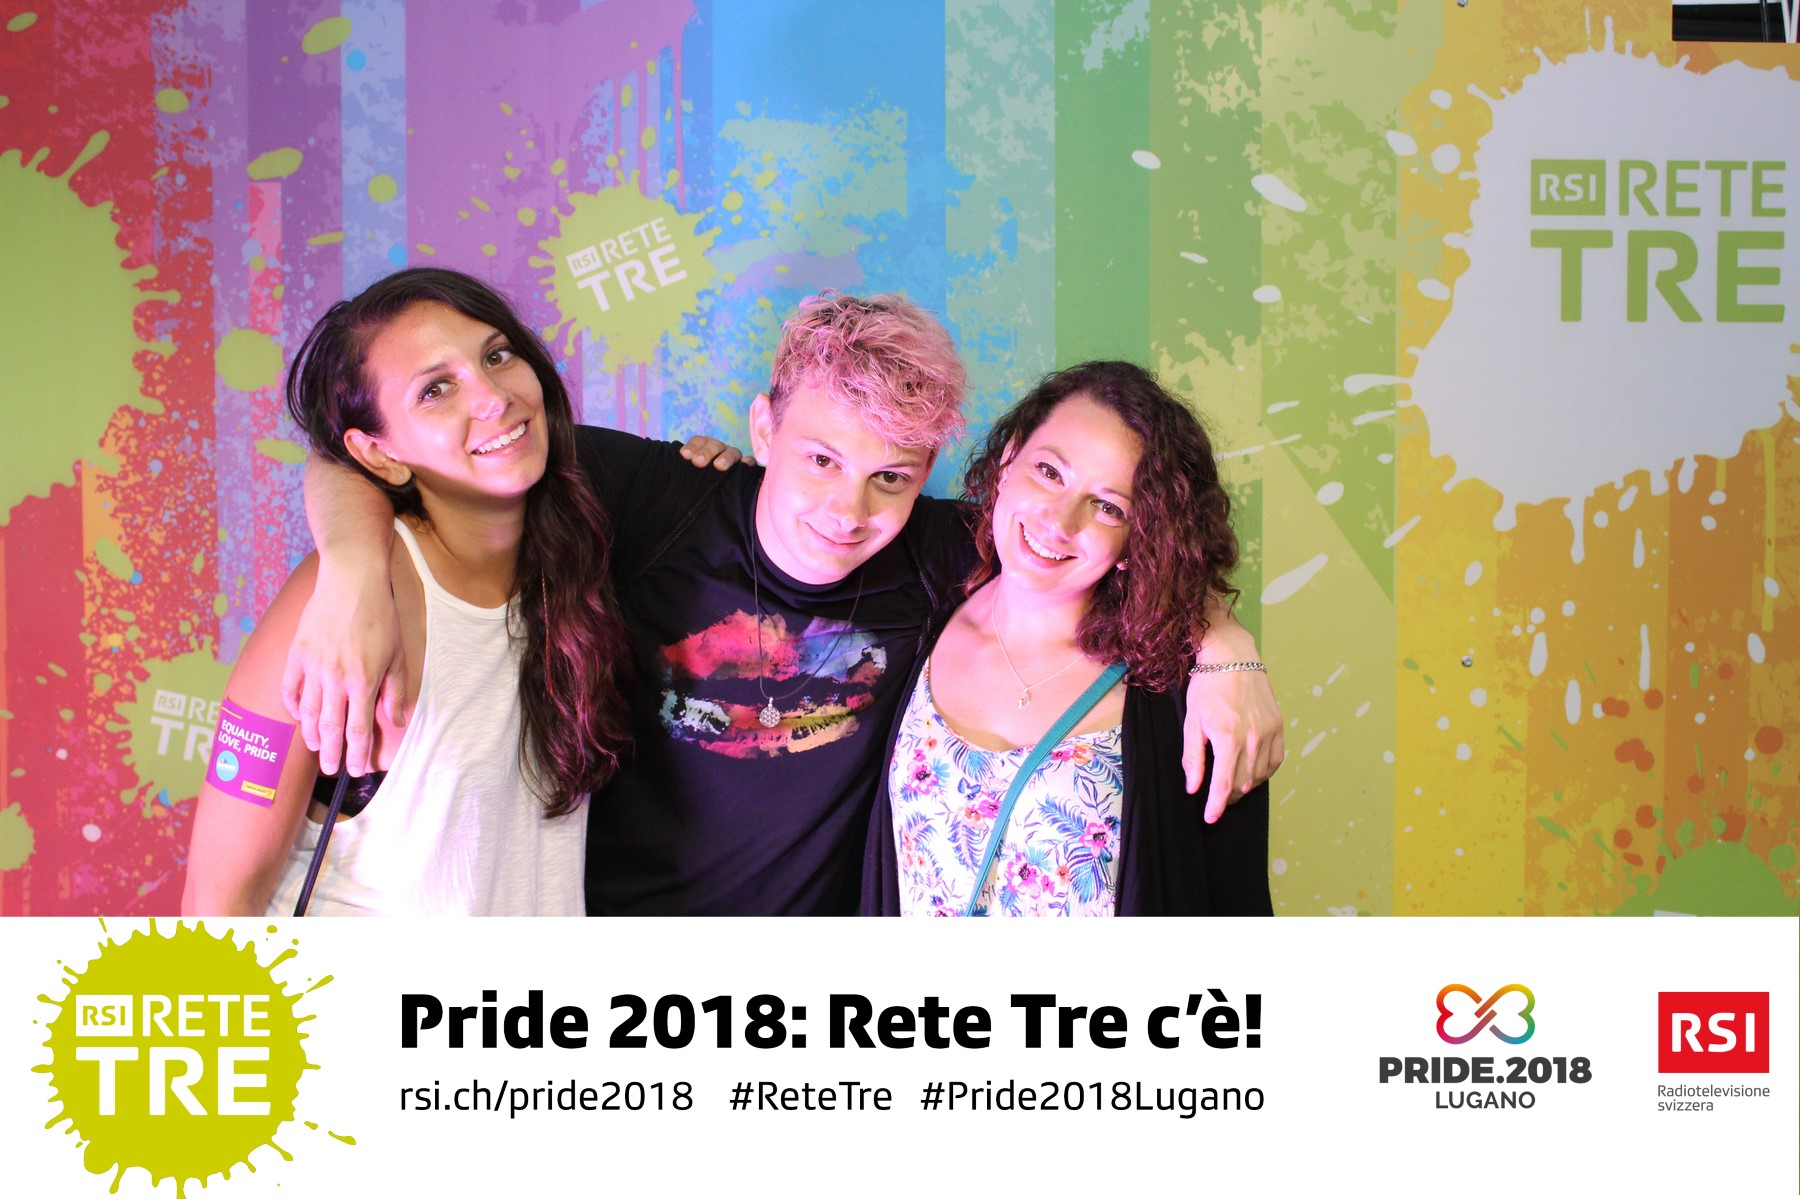 Rivedi tutte le foto scattate da Rete Tre al Pride 2018 su rsi.ch/retetre #RSIReteTre #Pride2018Lugano. Foto: